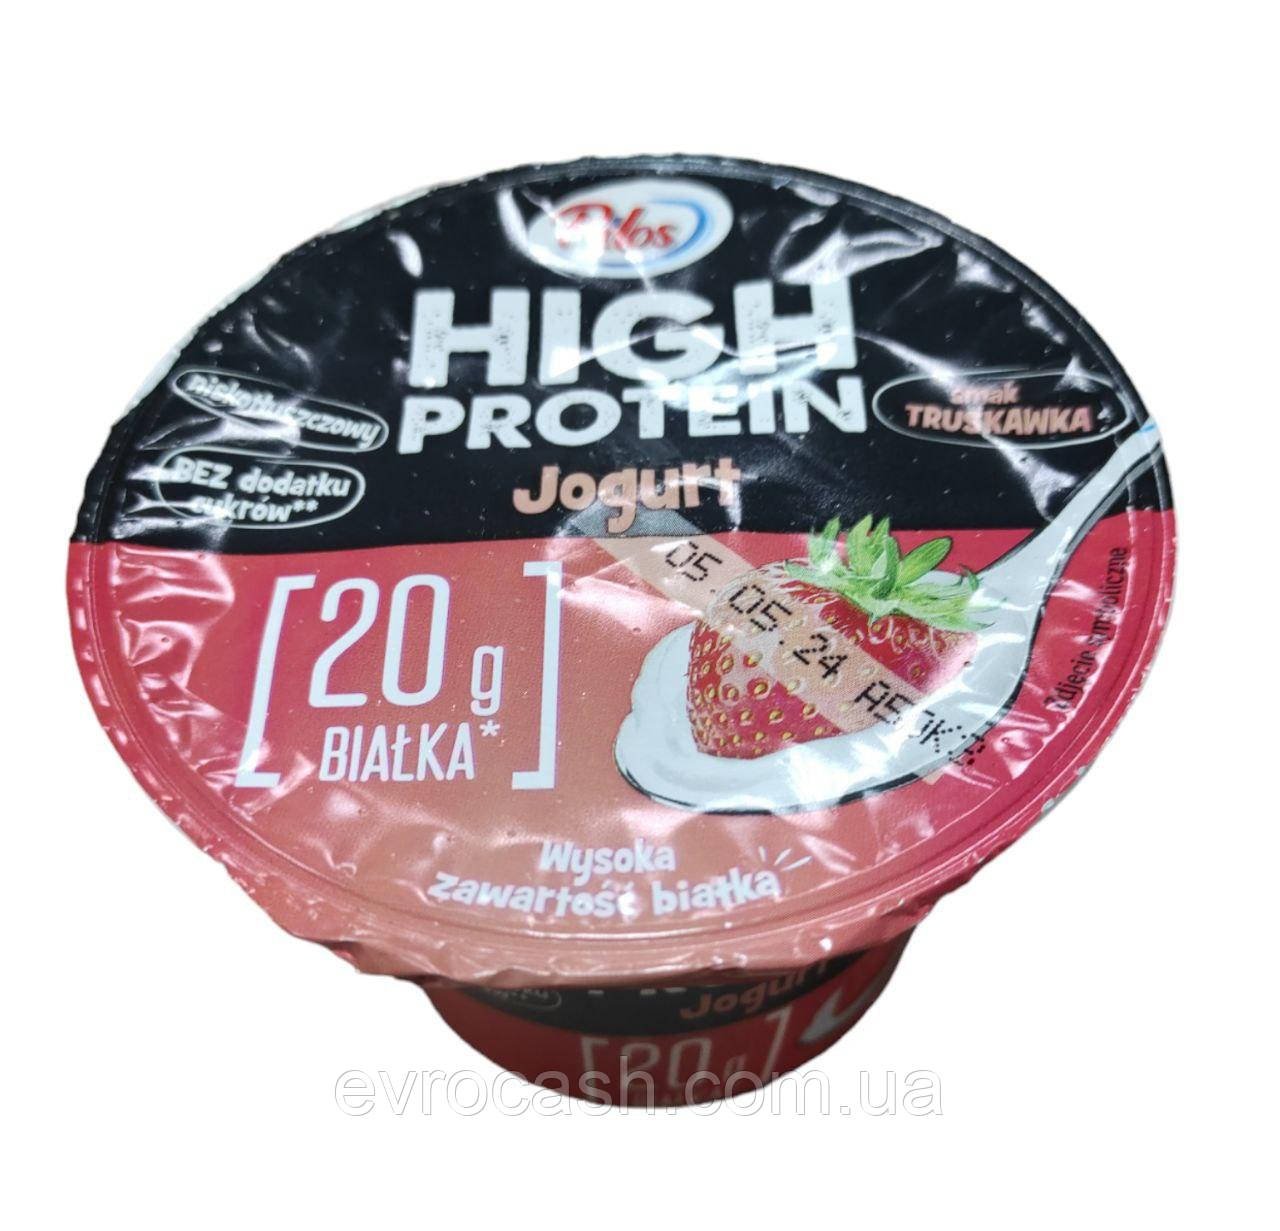 Йогурт High Protein Pilos в асортименті полуниця 200г